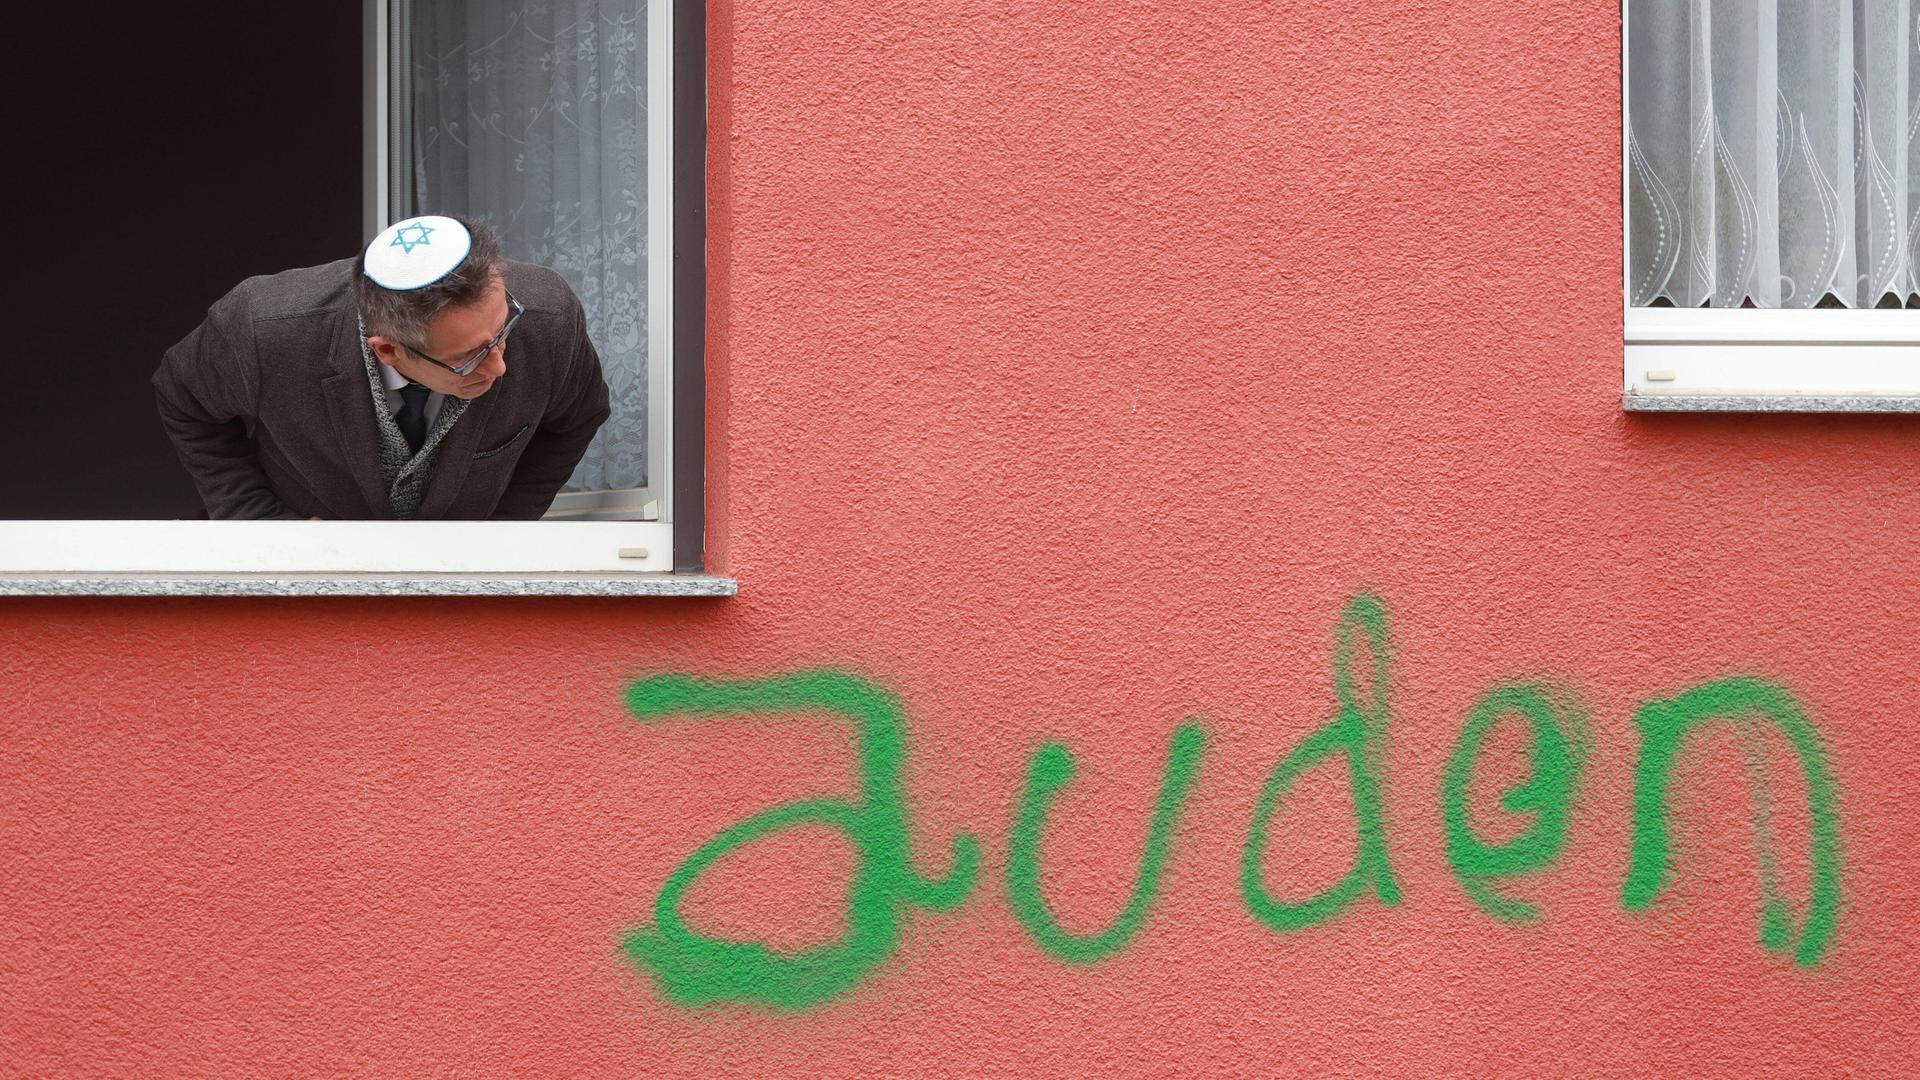 Ein Mann mit Kippa guckt aus einem Fenster. Unter dem Fenster ist die Wand mit dem Wort "Juden" beschmiert.